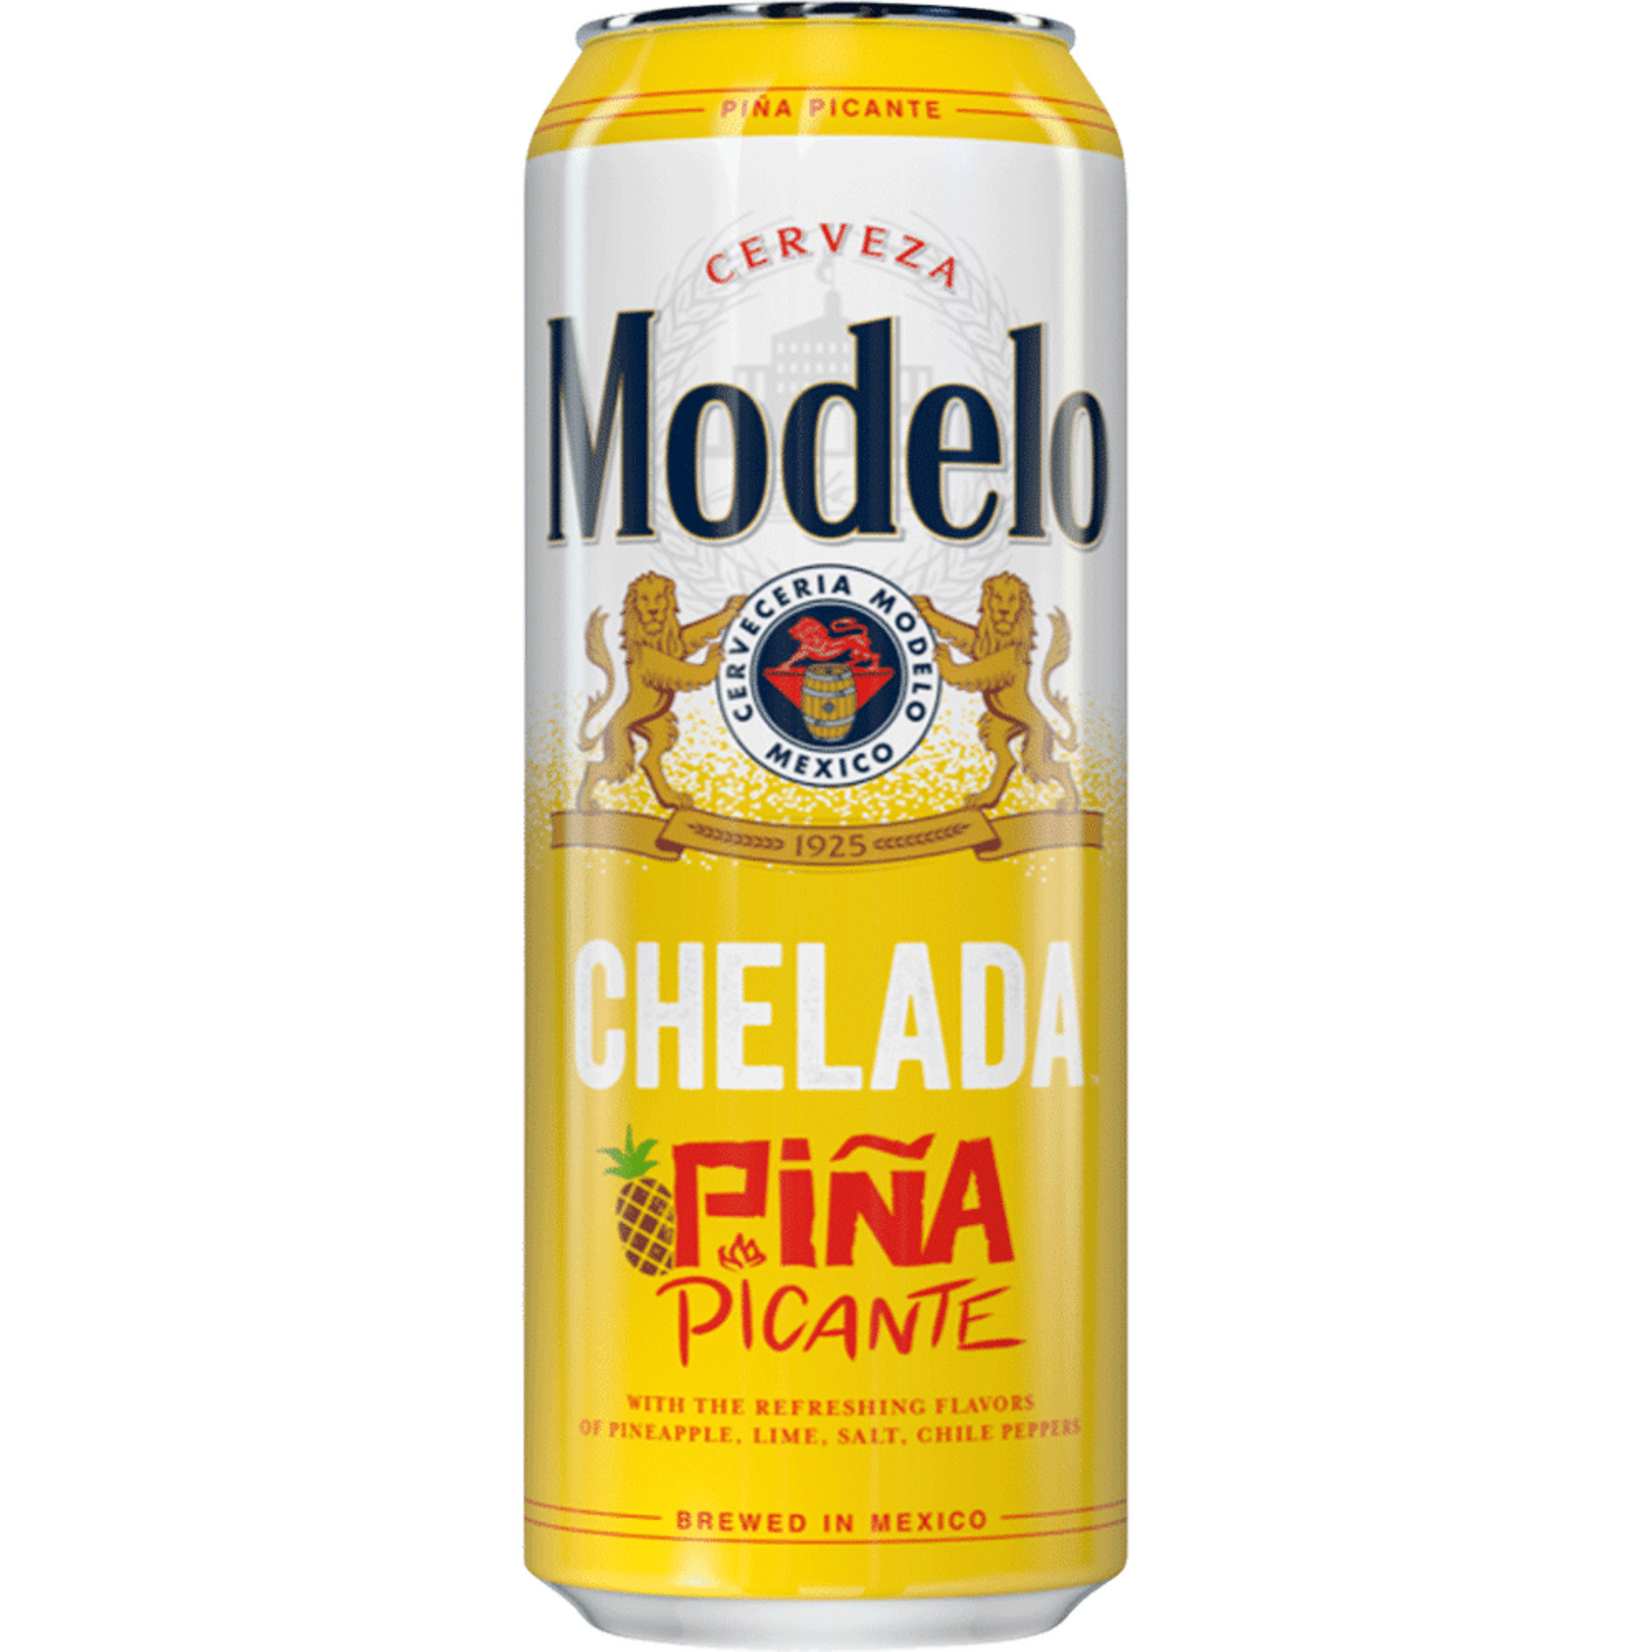 Modelo Chelada Piña Picante  24oz Single Can